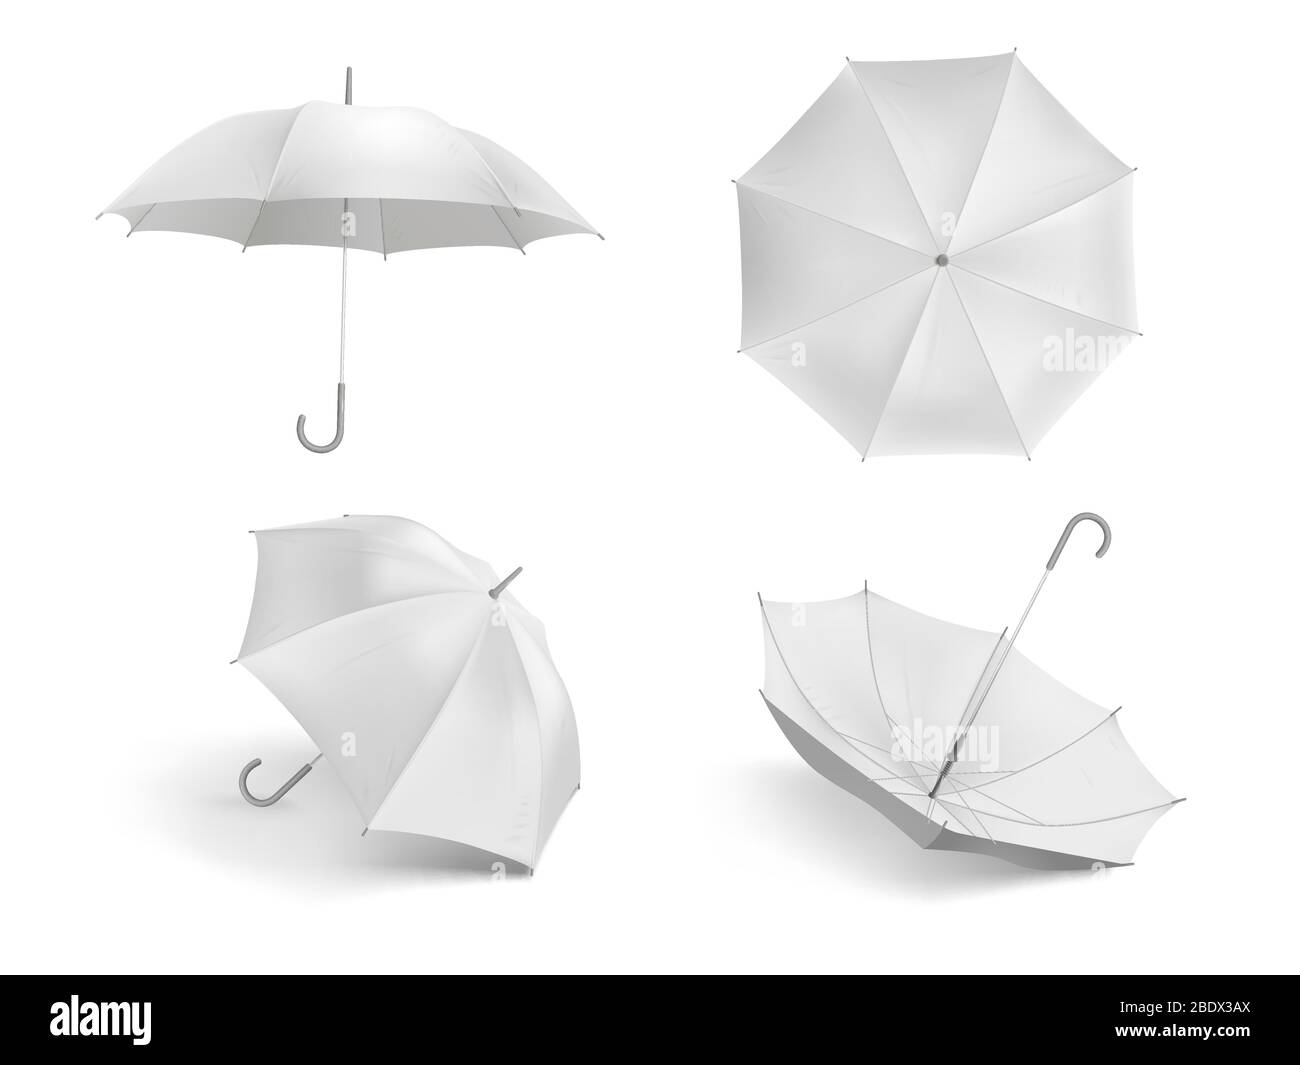 Realistische weiße Regenschirm Mockup. Blank offenen Stoff Sonnenschirm,  Outdoor Wetter wasserdichte Regenschirme Vektor Vorlage Set  Stock-Vektorgrafik - Alamy